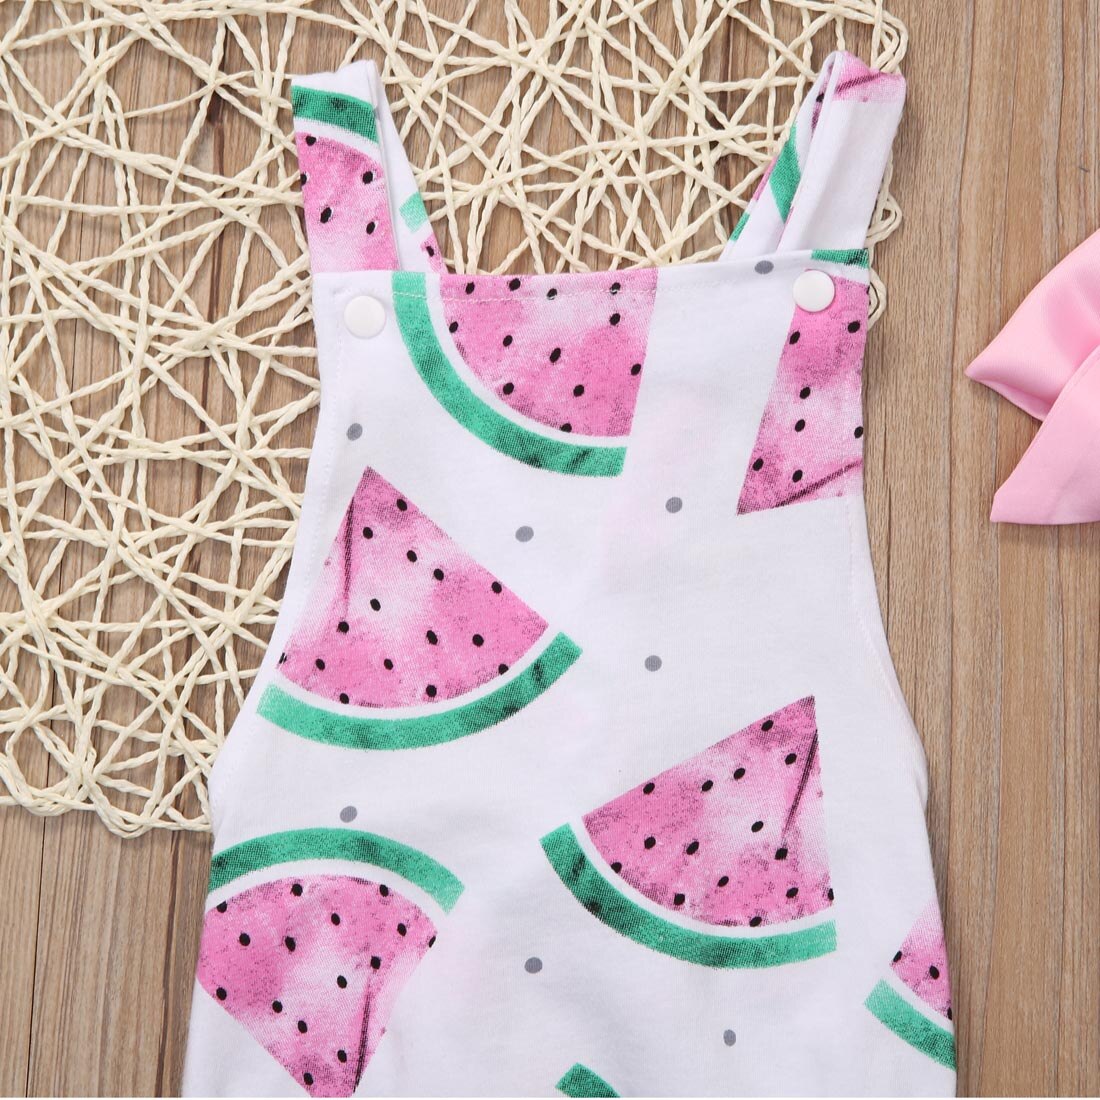 Infant Baby Girl Watermelon bodysuits Sunsuit Jumpsuit Outfit Set Clothes - ebowsos